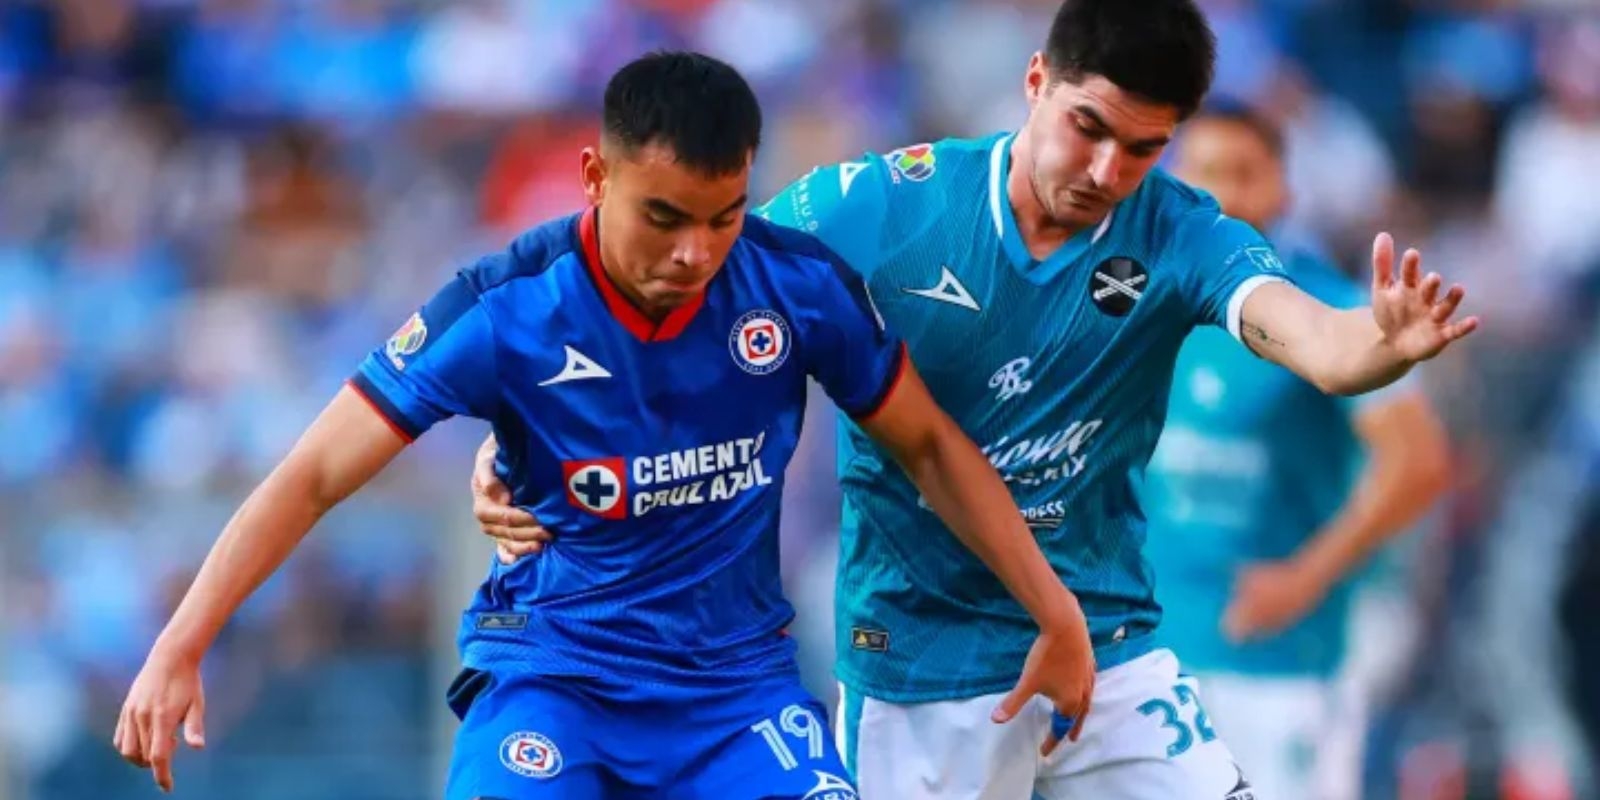 Los PRECIOS OFICIALES de los boletos para Cruz Azul vs Mazatlán en el Estadio Azul